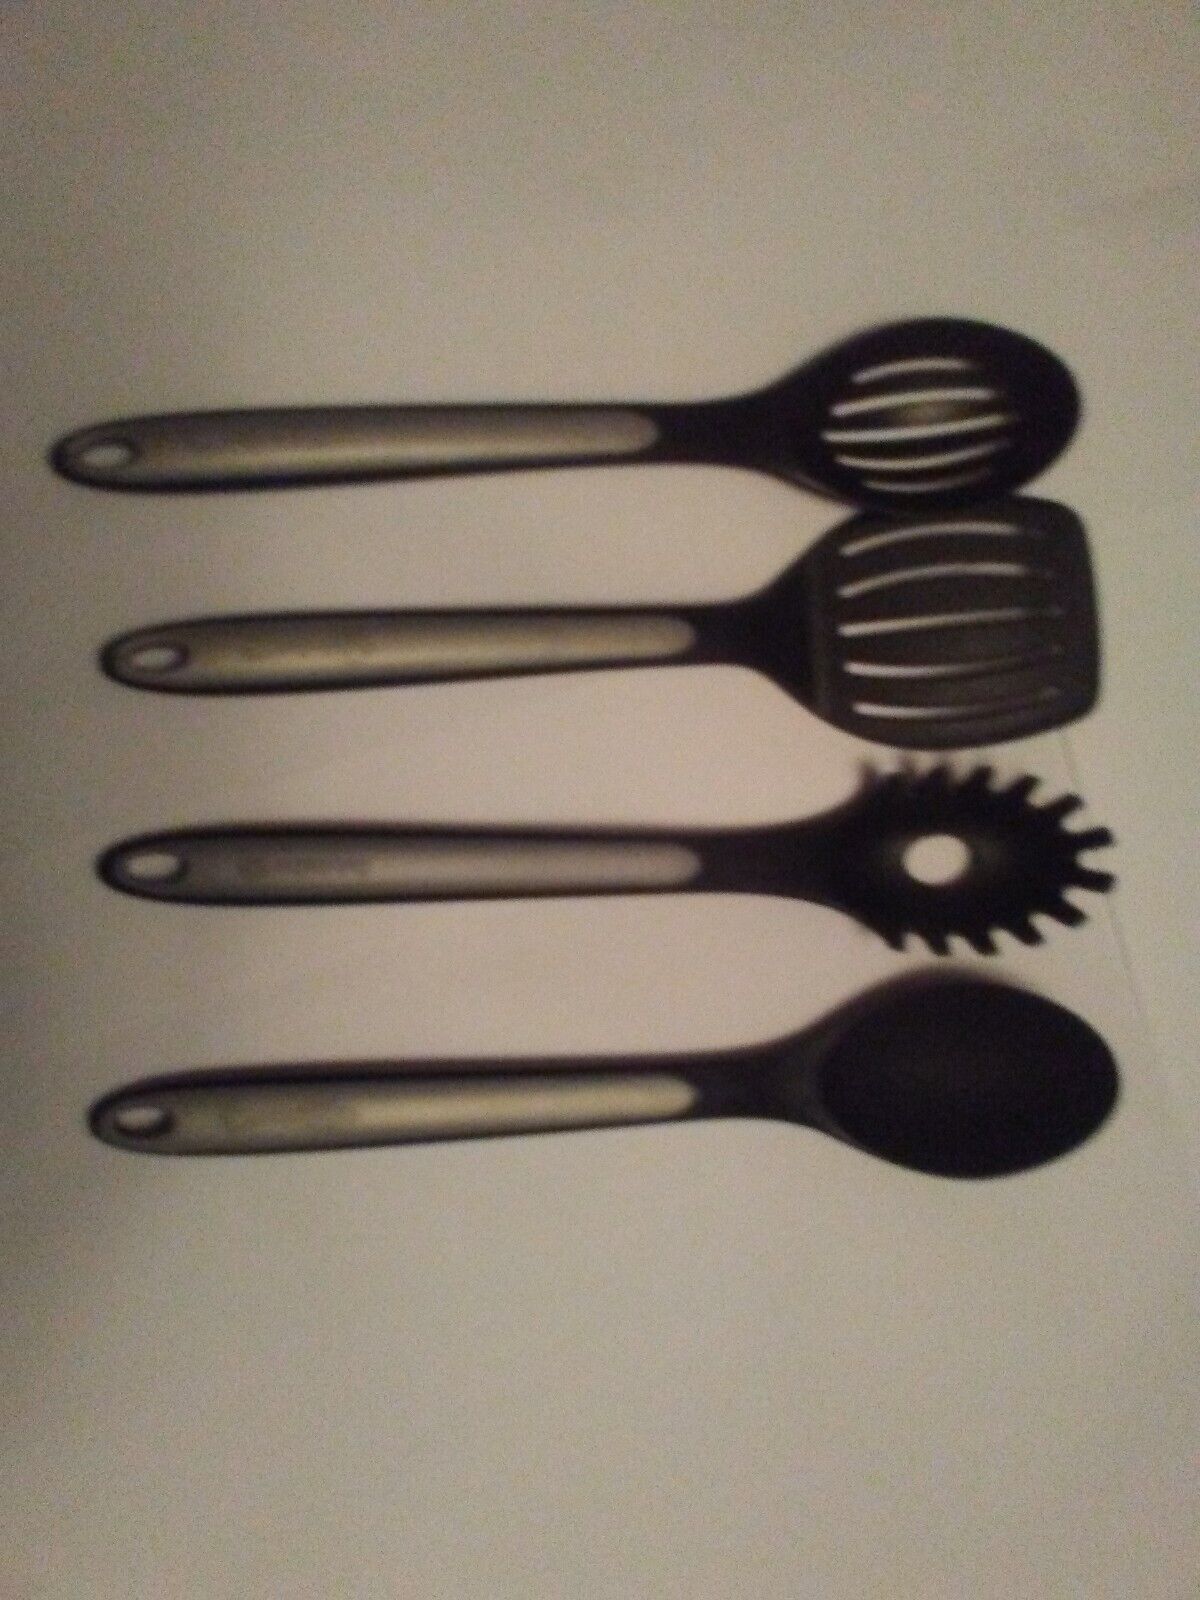 lot of Calphalon utensil set - $56.99